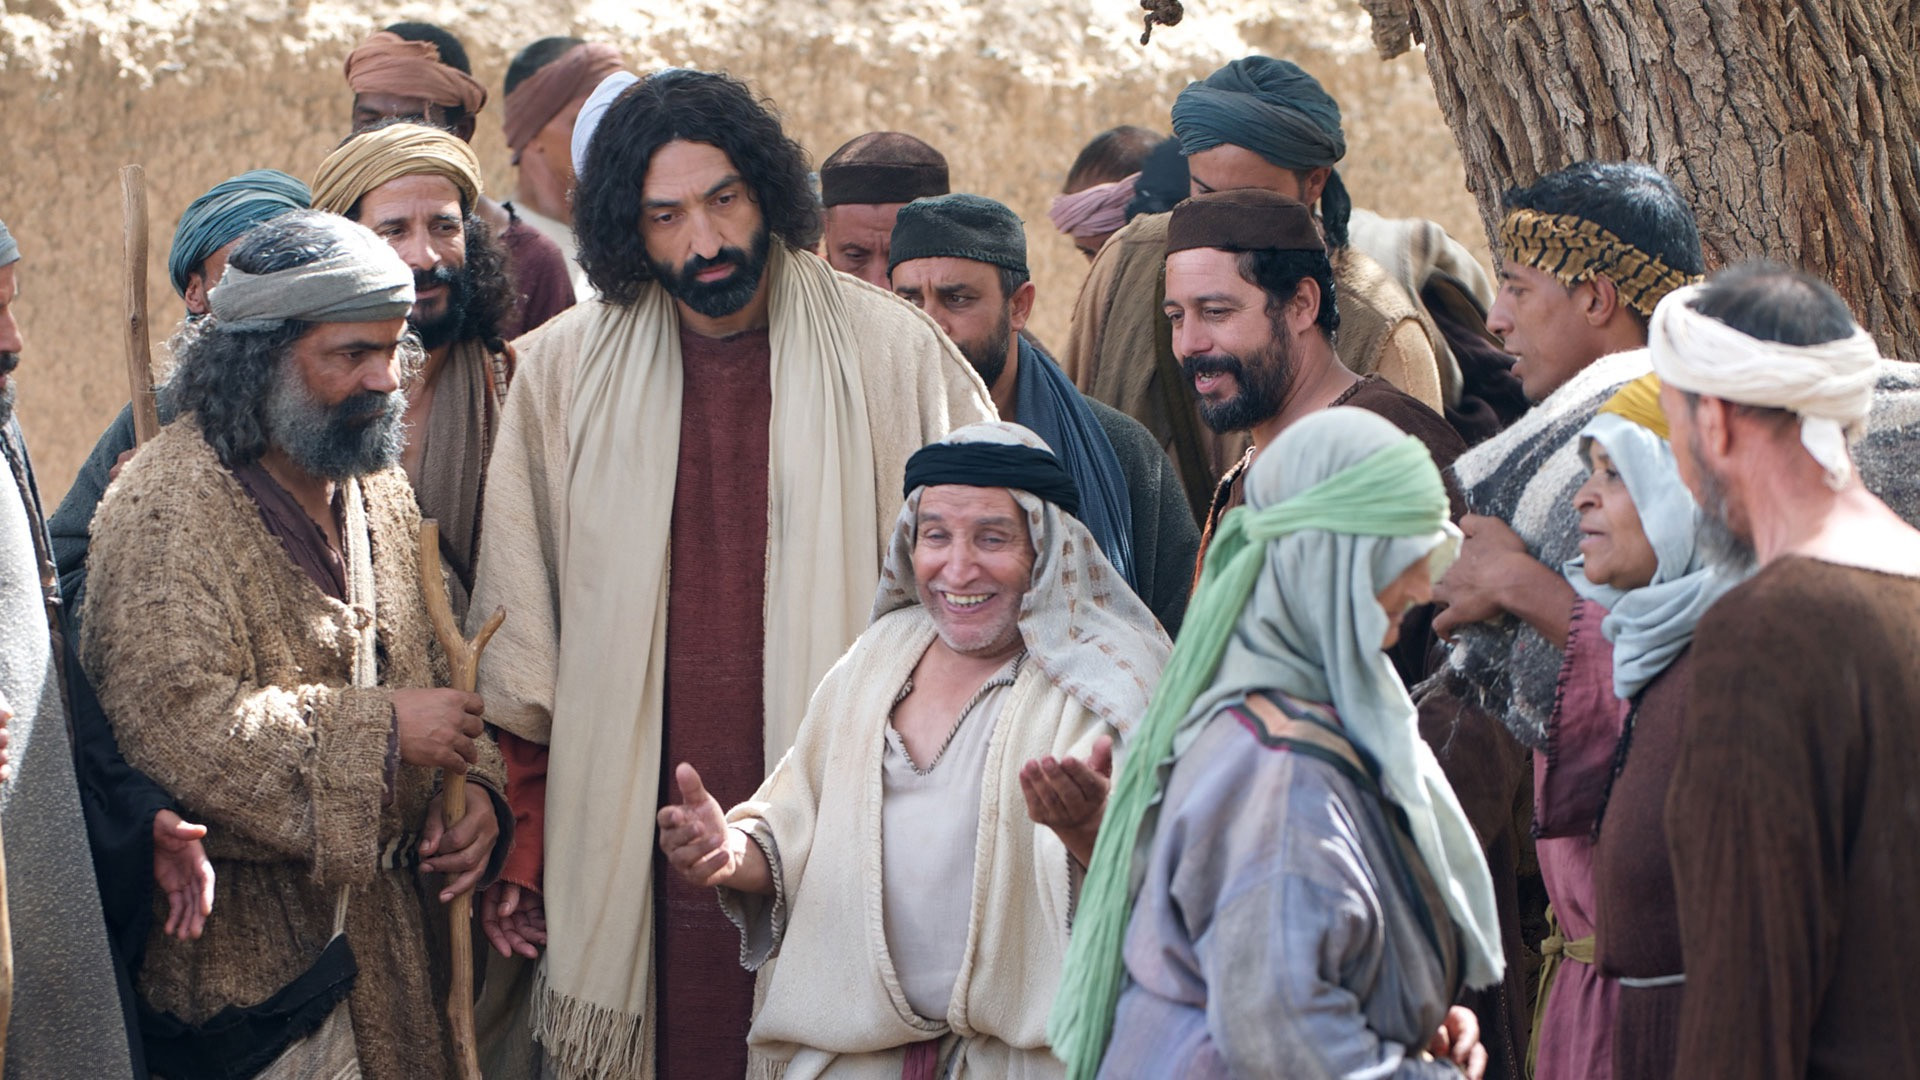 キリストと群衆に囲まれるザアカイのイメージ画像